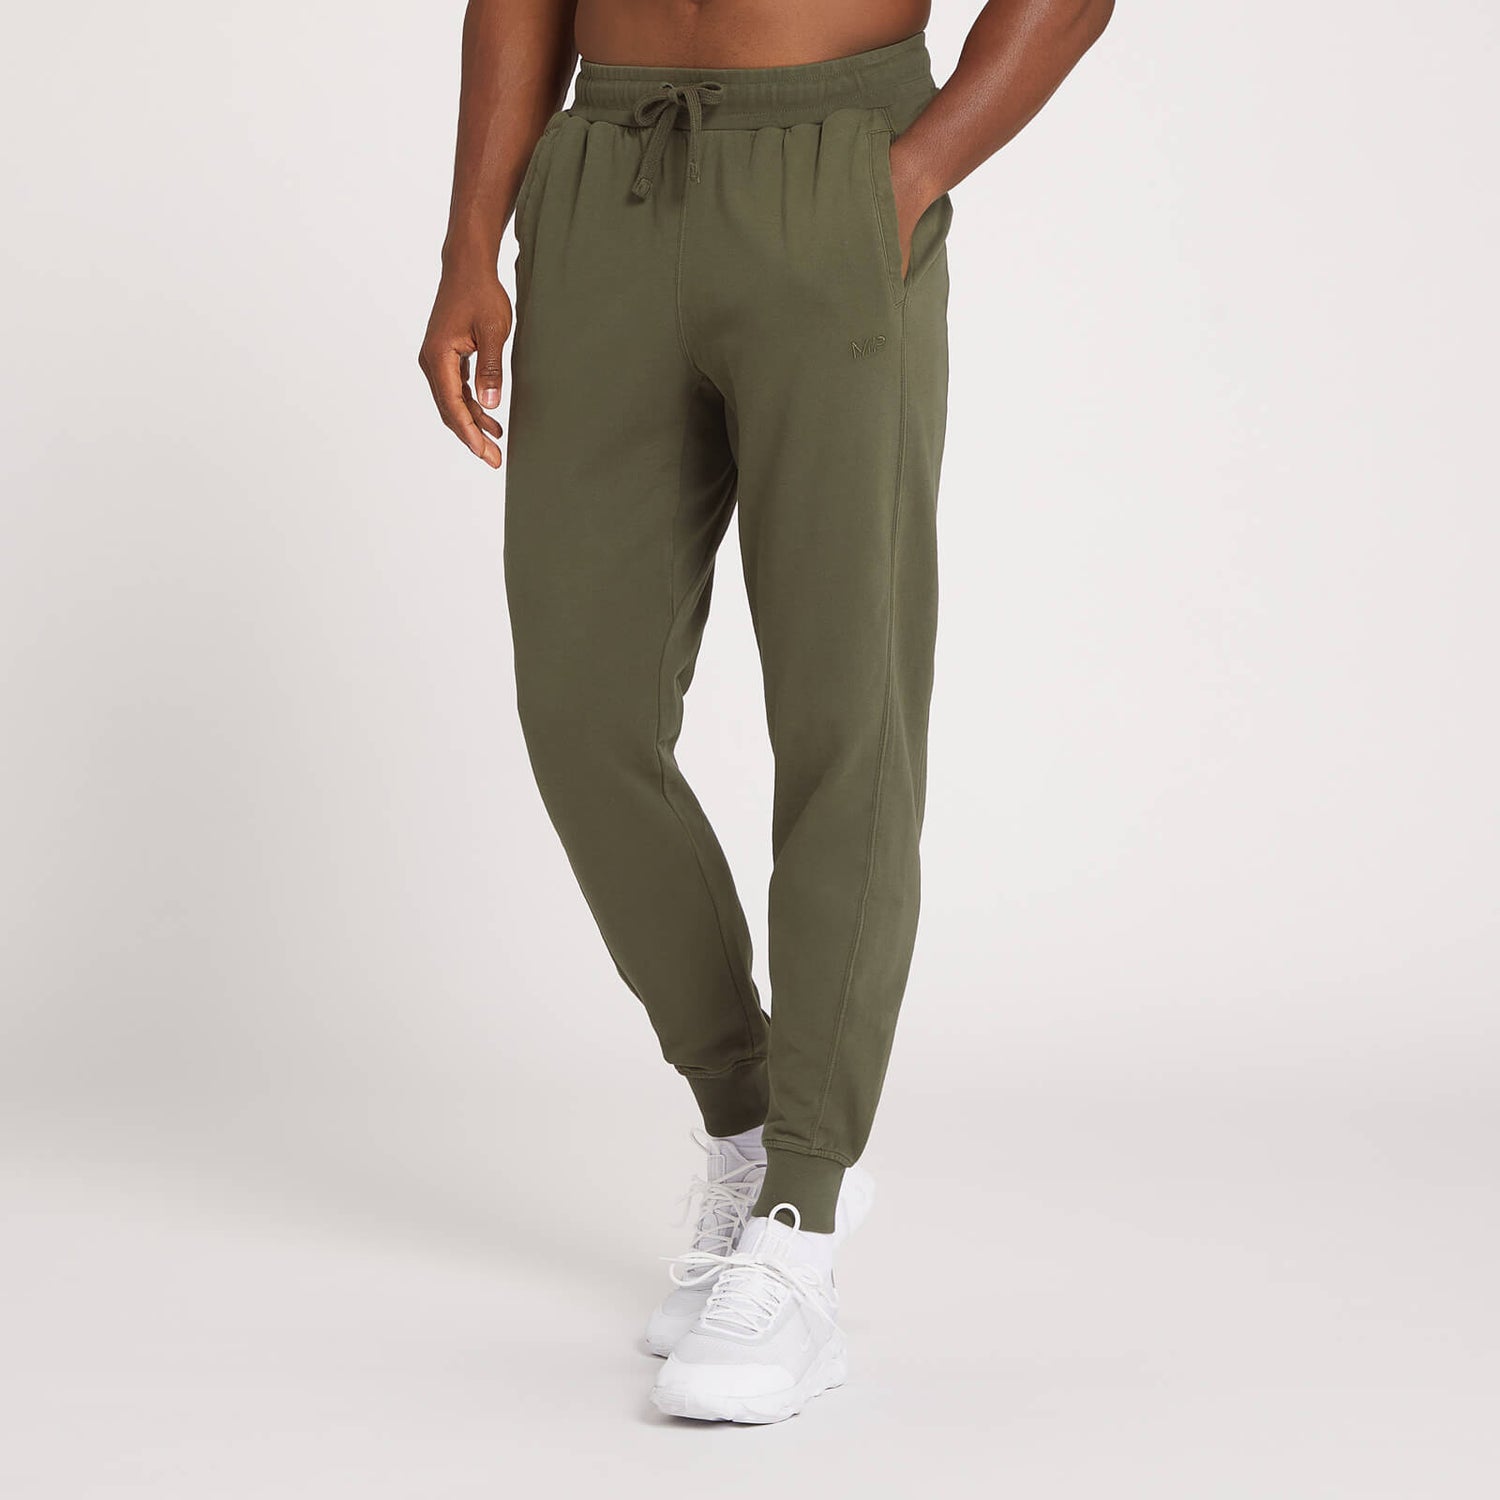 Dynamic动感系列男士训练运动裤 - 深橄榄绿 - S